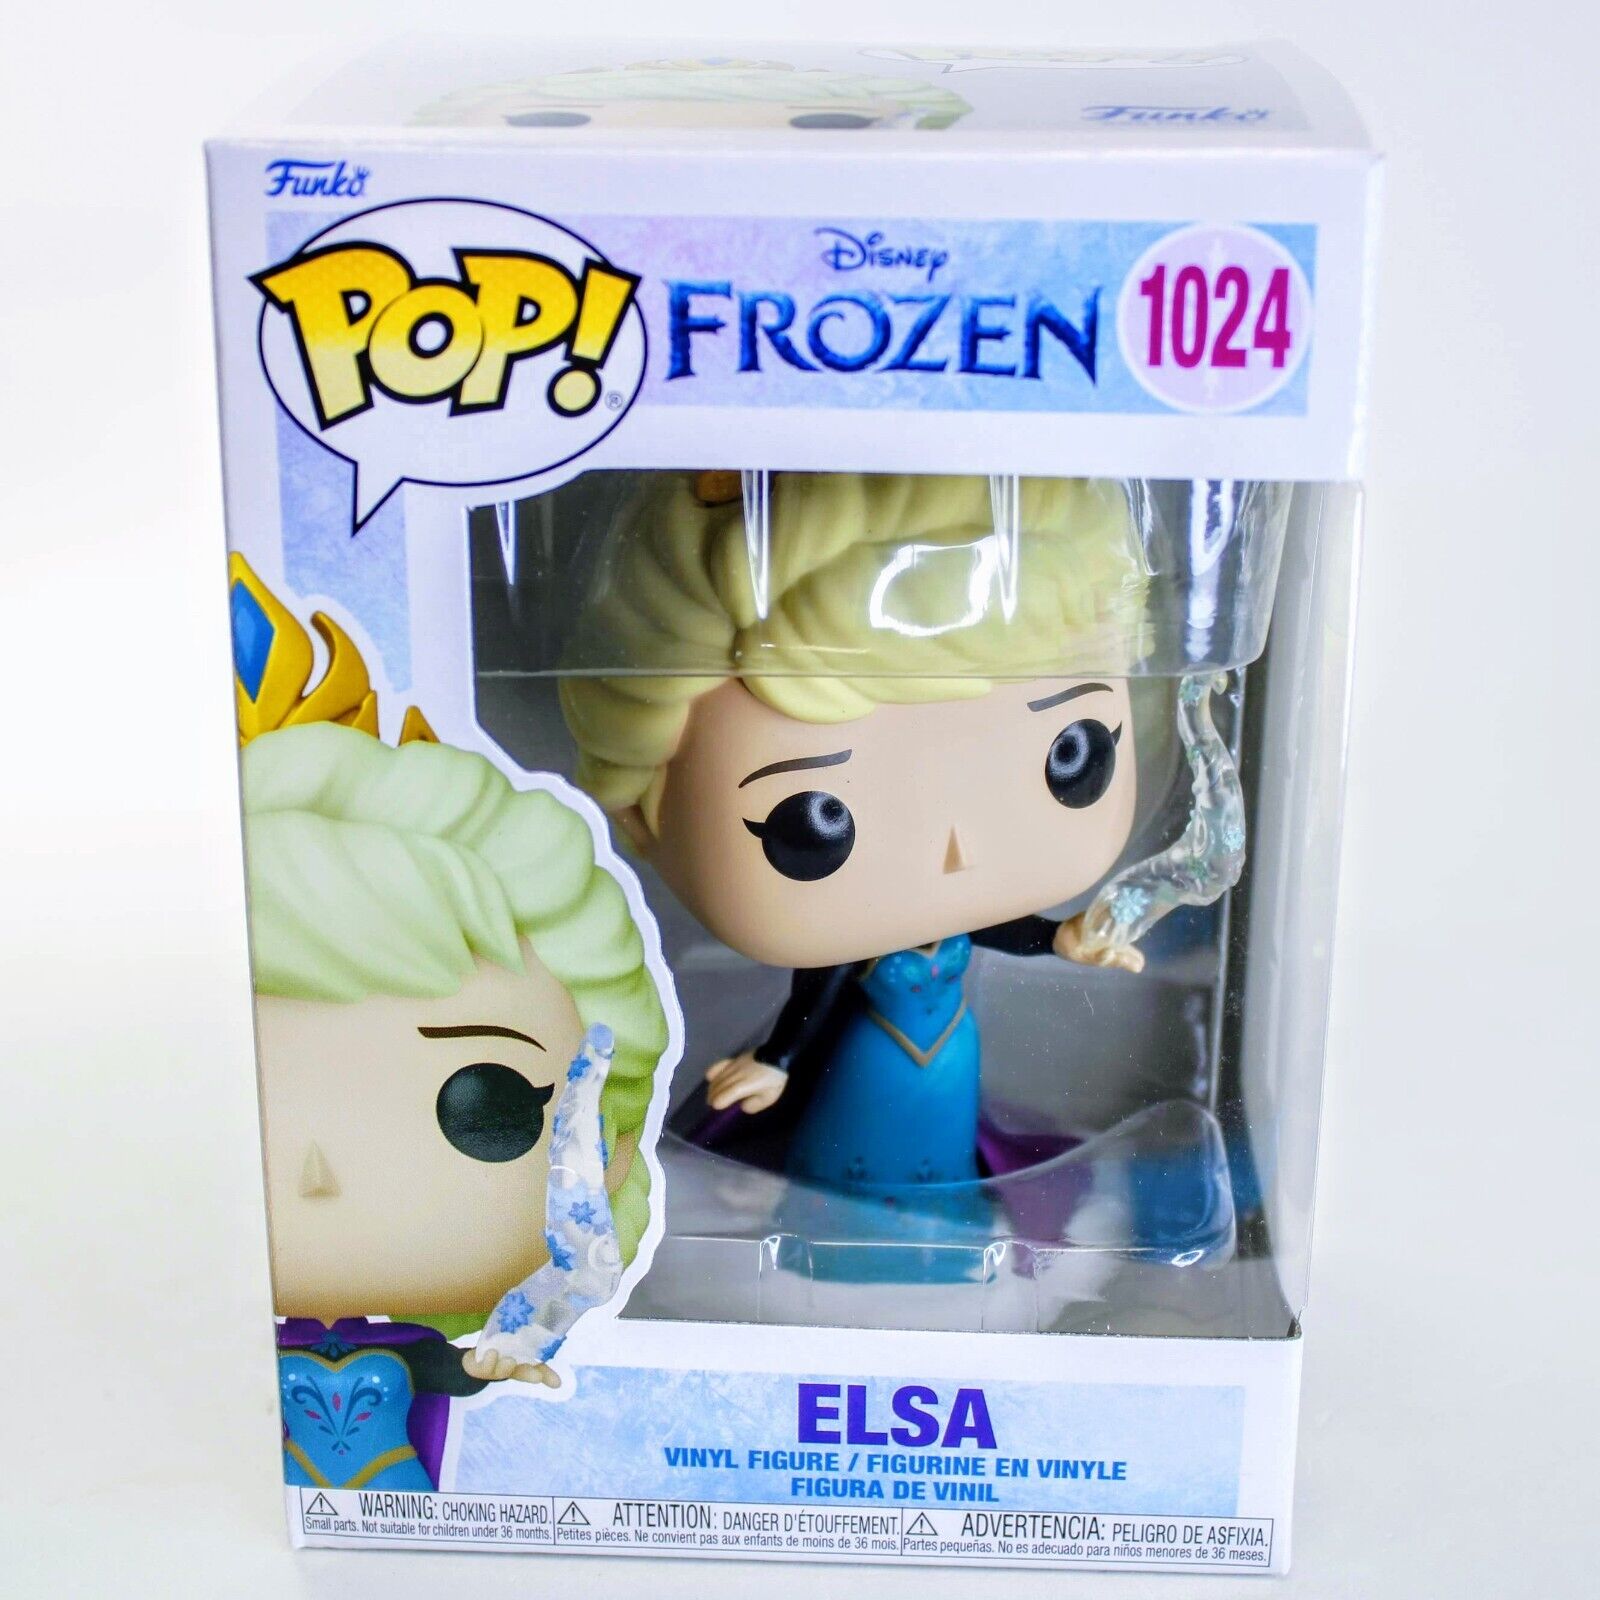 Funko Pop Disney Frozen Elsa - Diamond Glitter Pop Figure EE